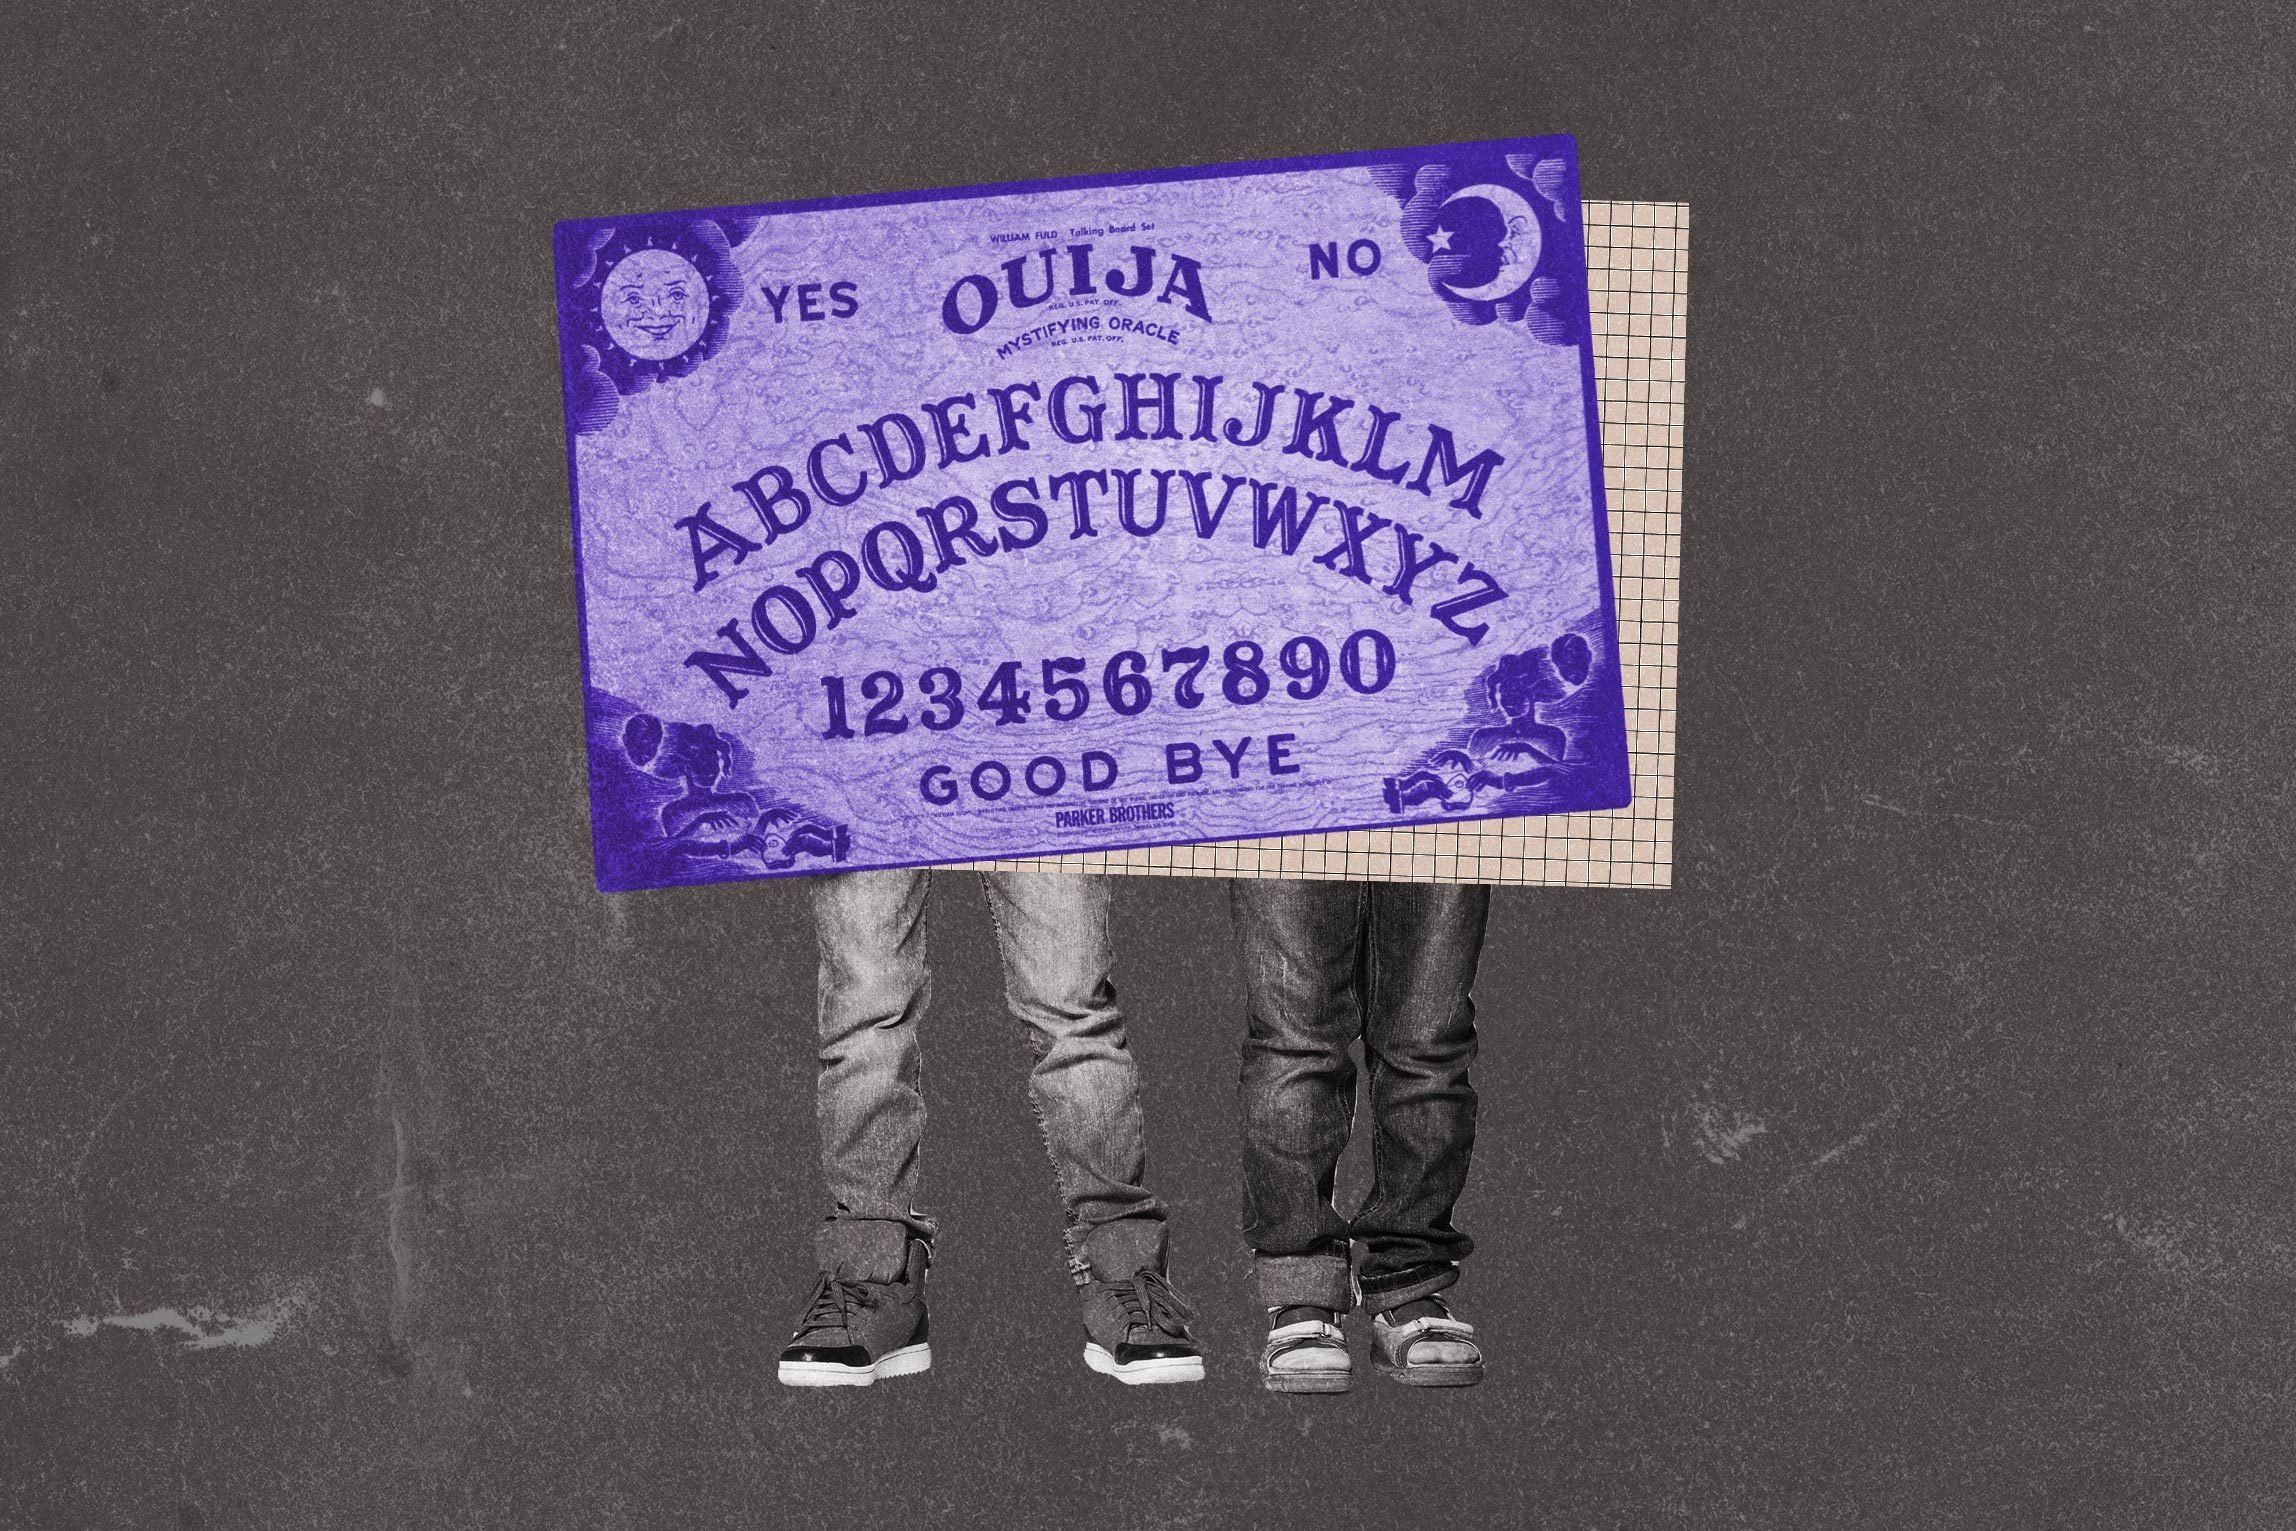 Two boys, ouija board